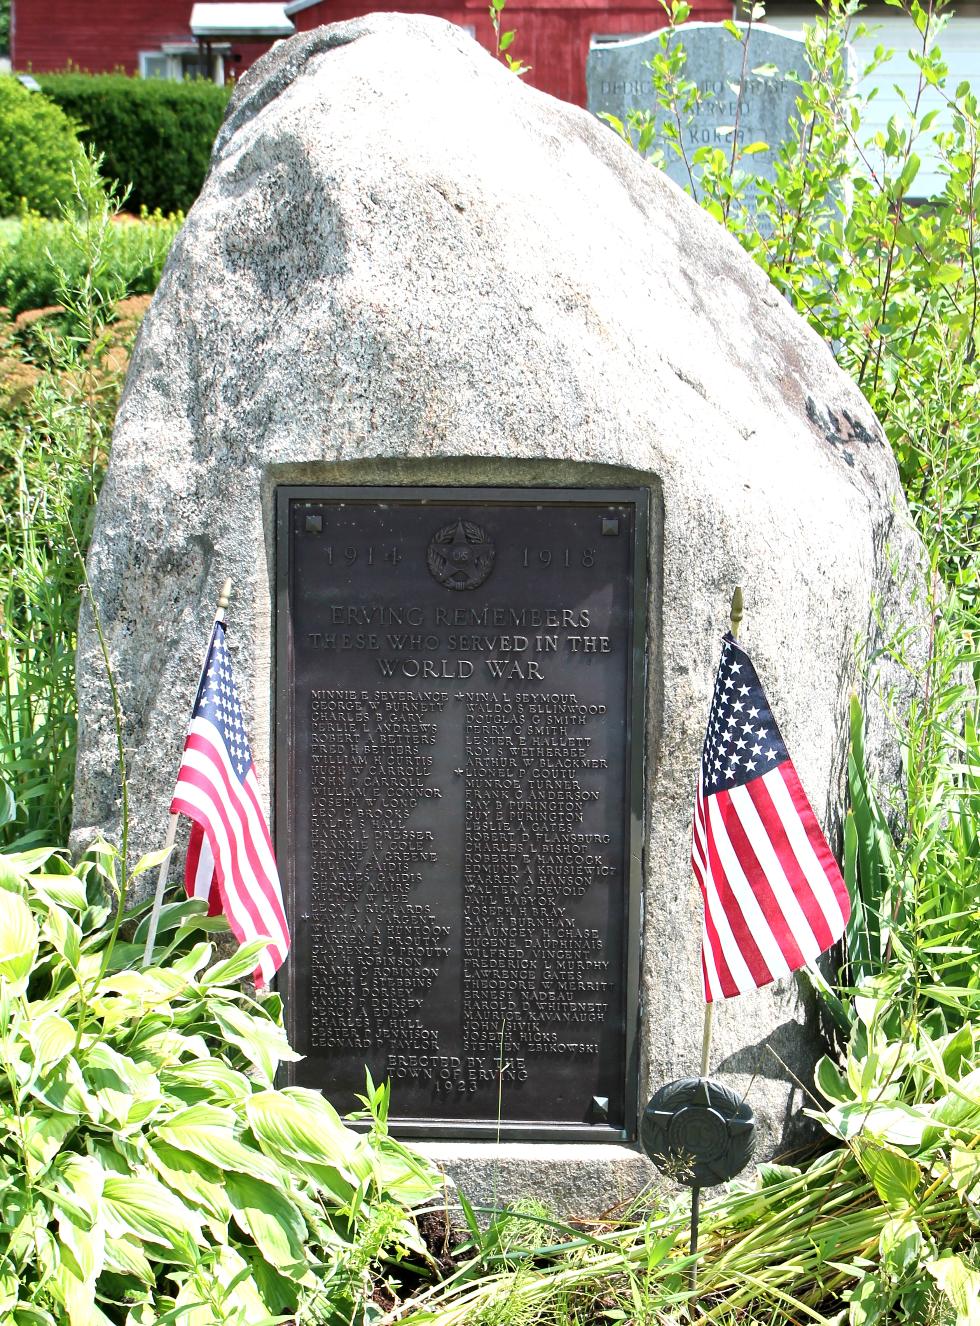 Erving Massachusetts World War I Veterans Memorial